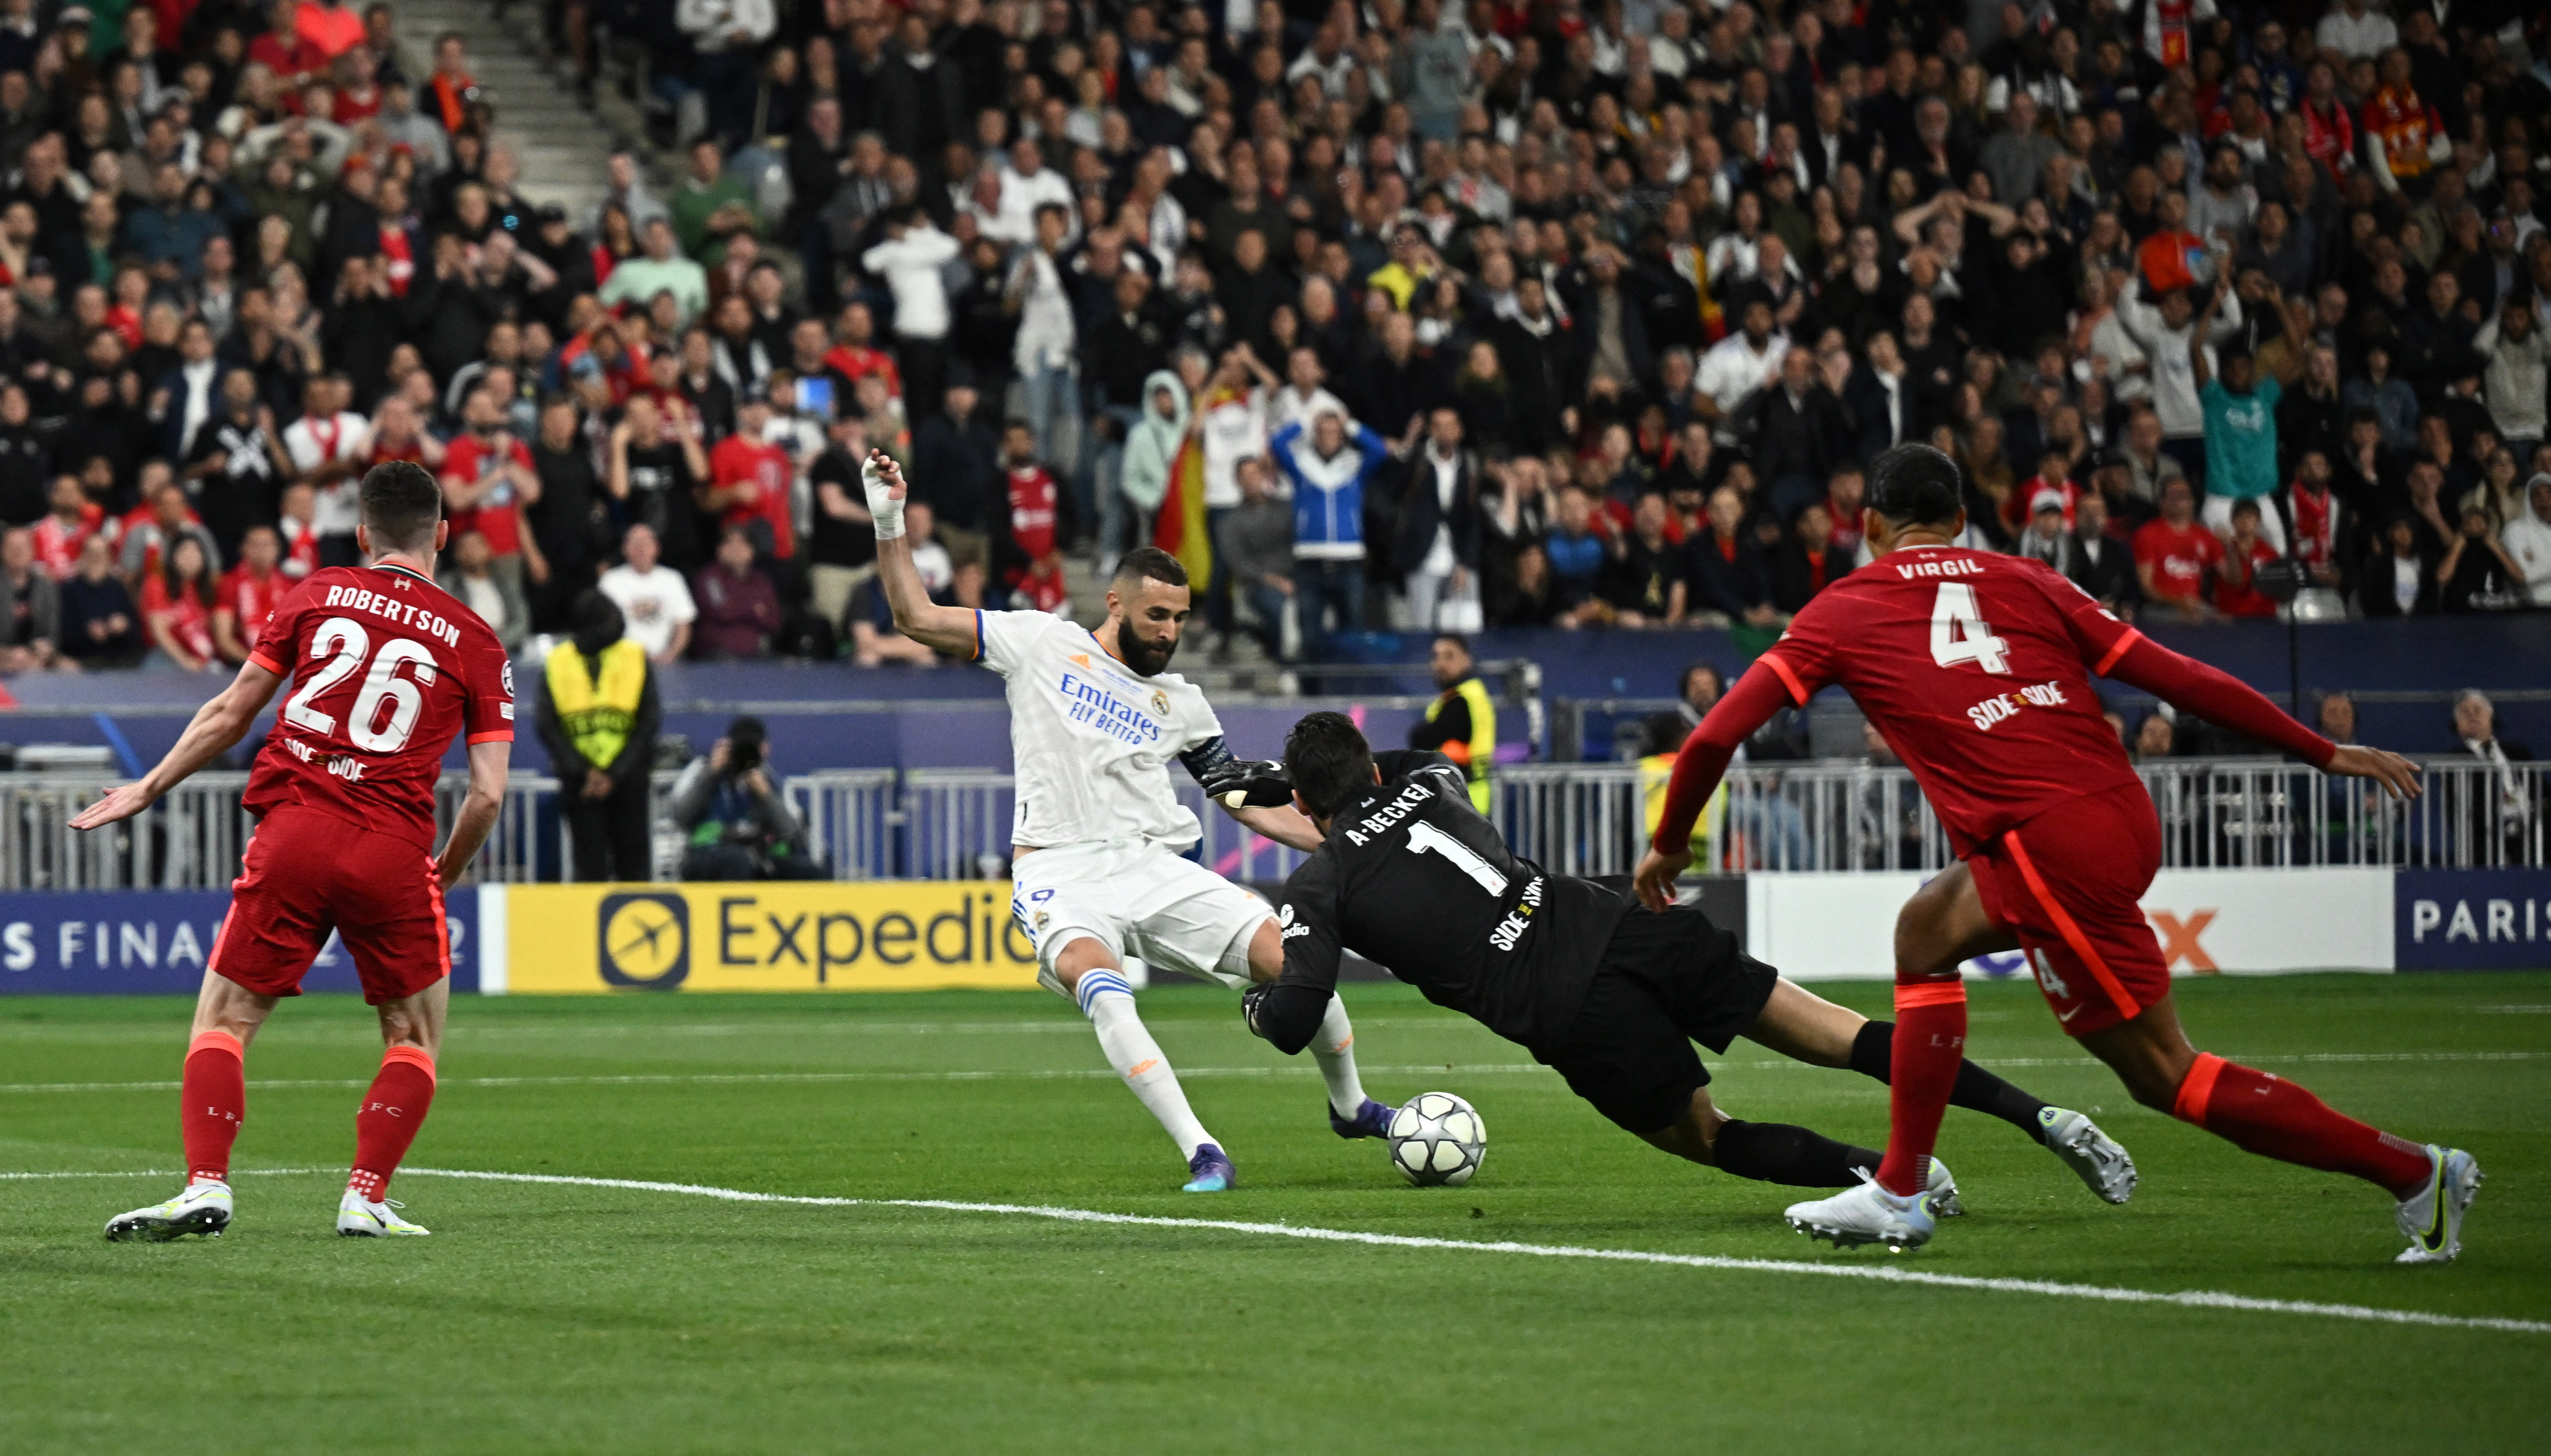 Polémica por el offside de Benzema en el gol anulado al Real Madrid en la final de la Champions League